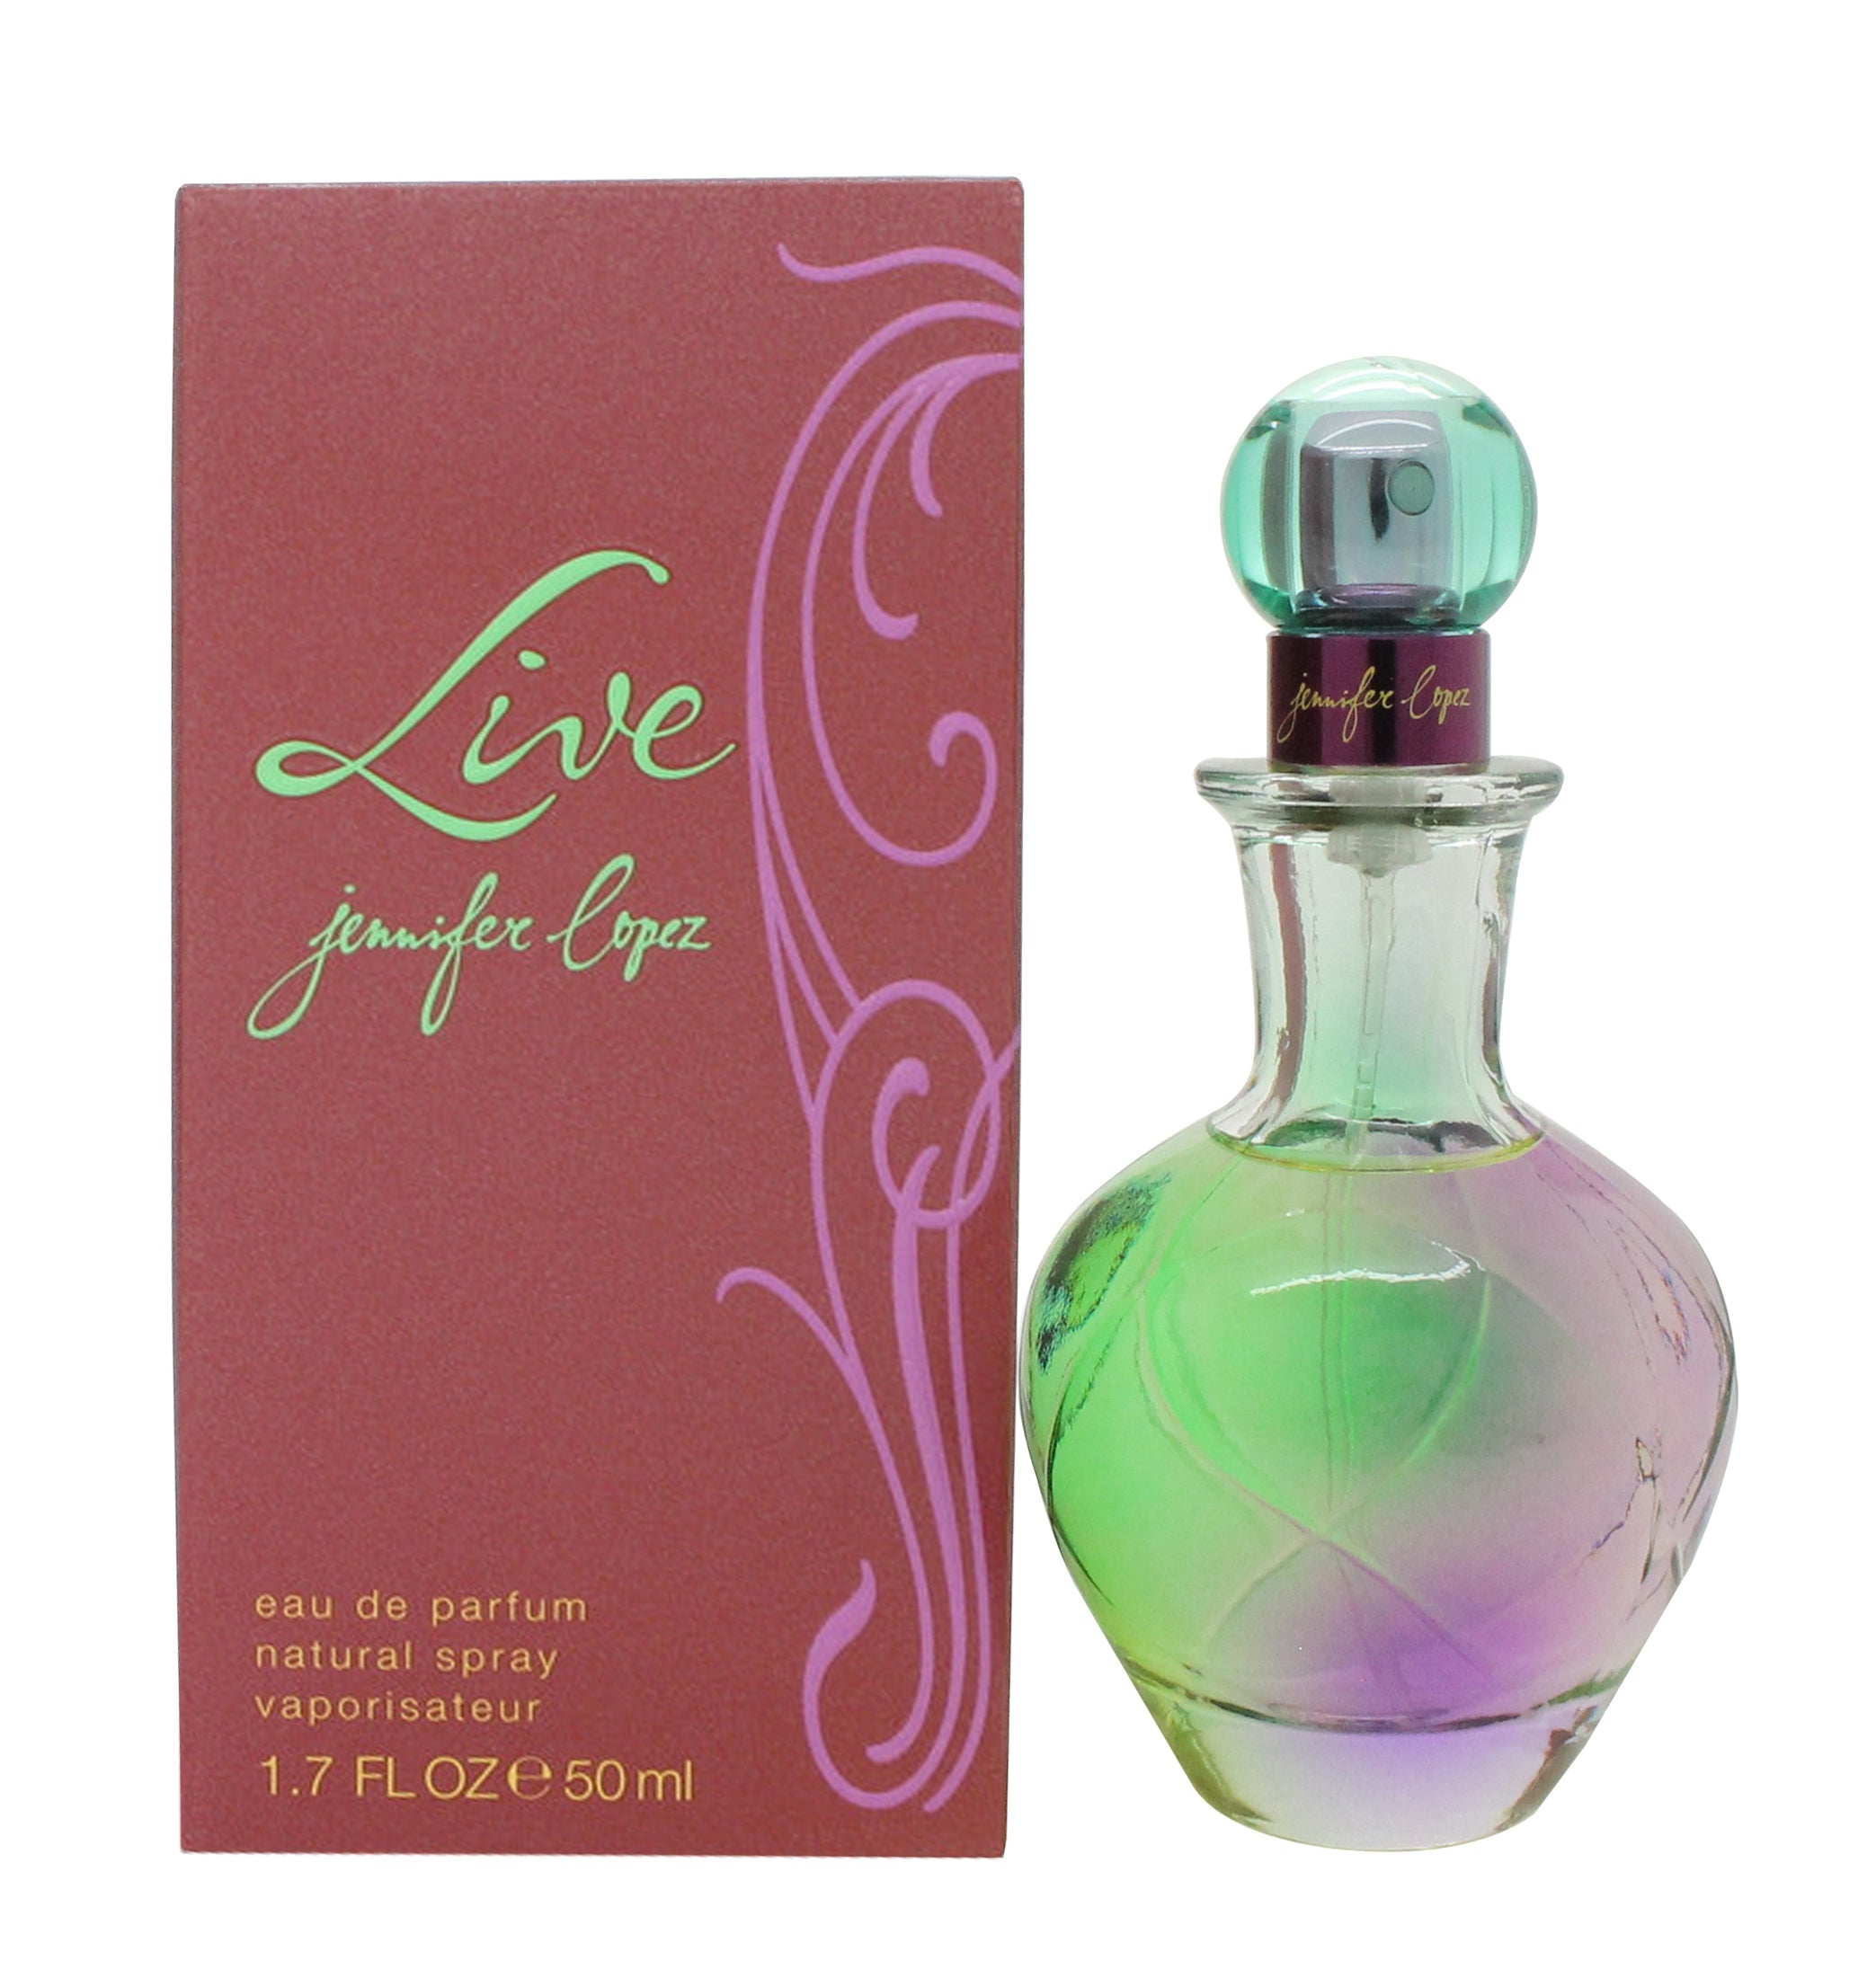 View Jennifer Lopez Live Eau de Parfum 50ml Spray information